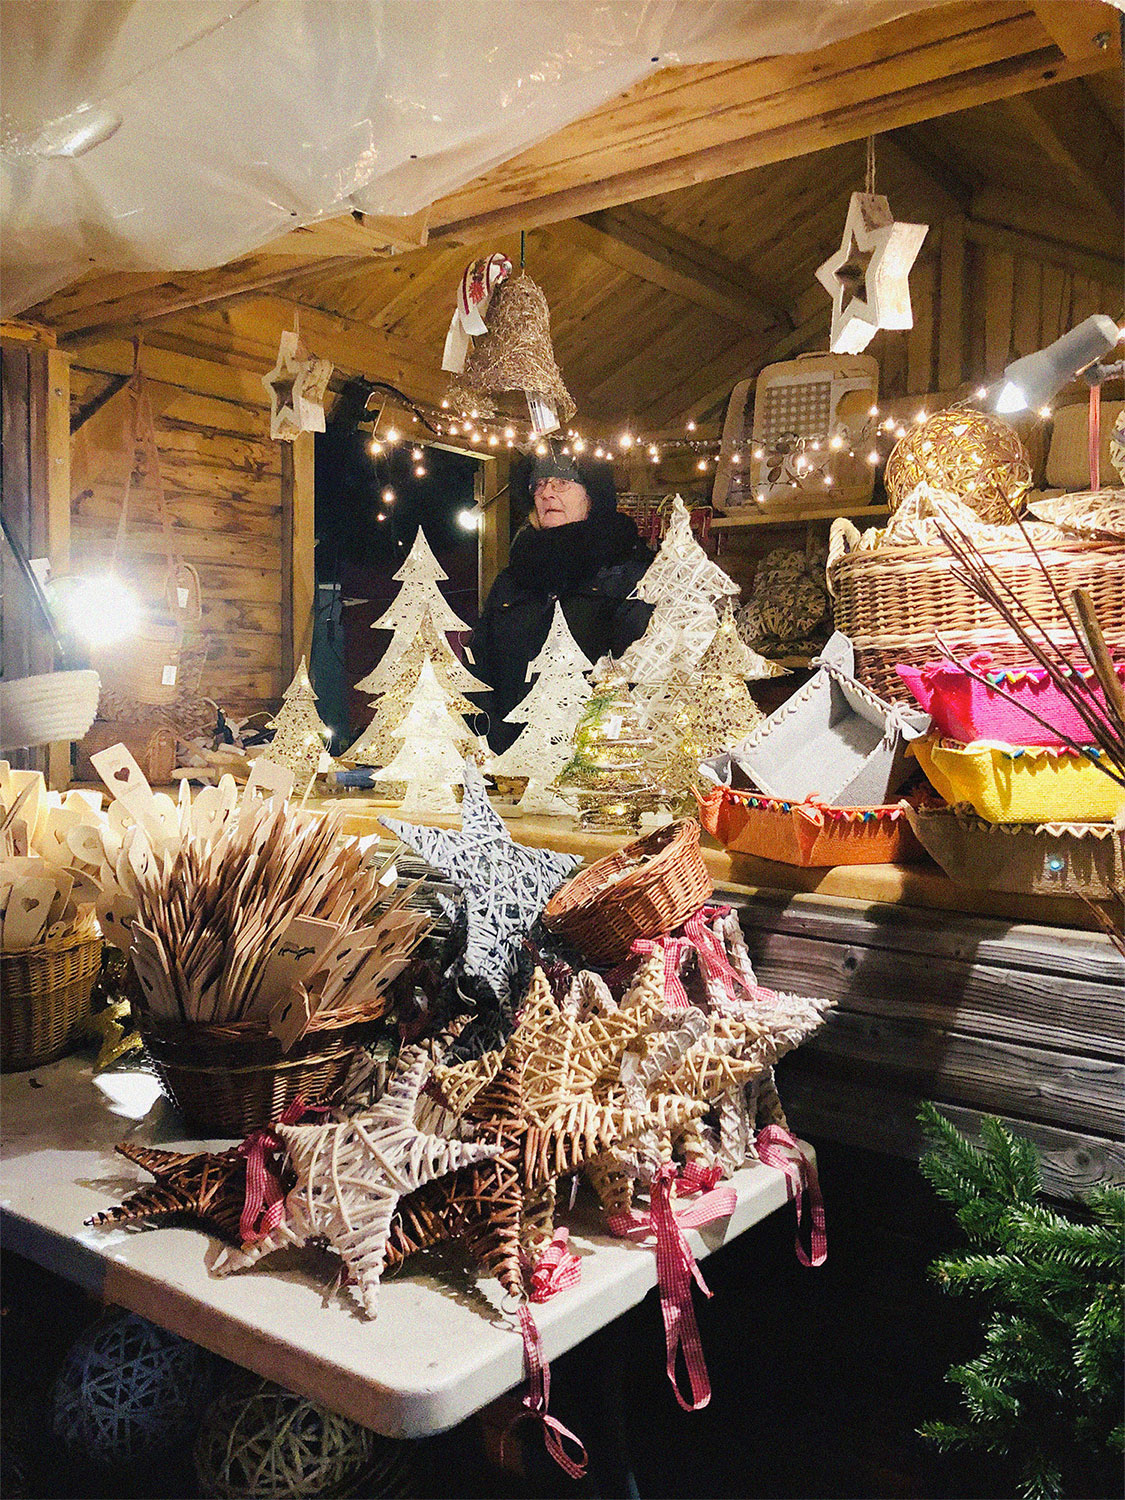 Weihnachtsmarkt, Christmas Market in Germany